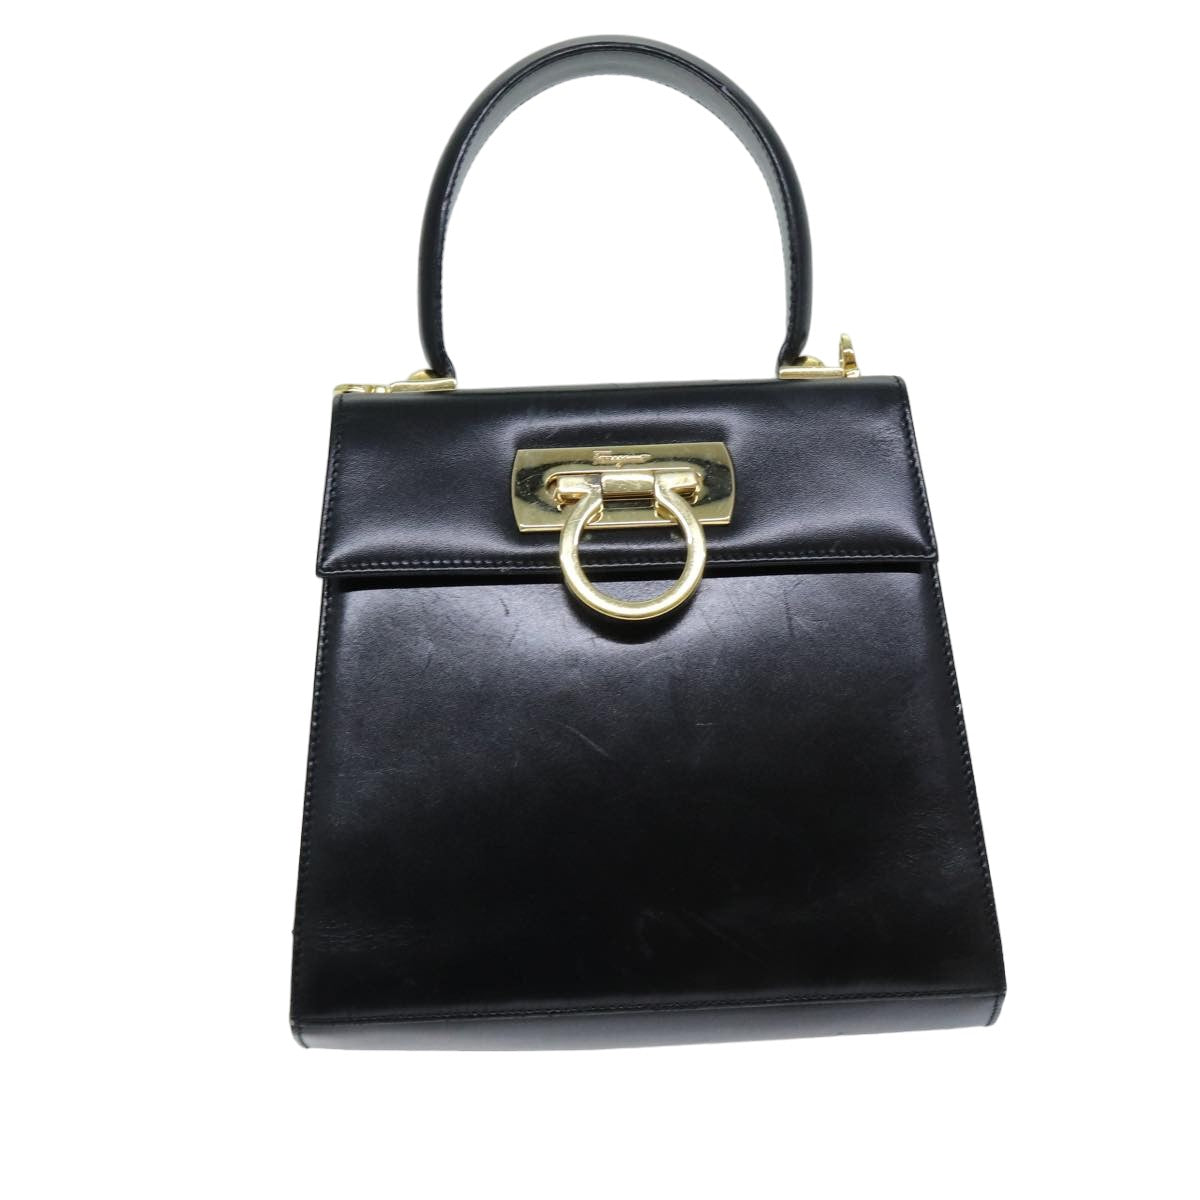 Salvatore Ferragamo Gancini Hand Bag Leather Black Auth 76730